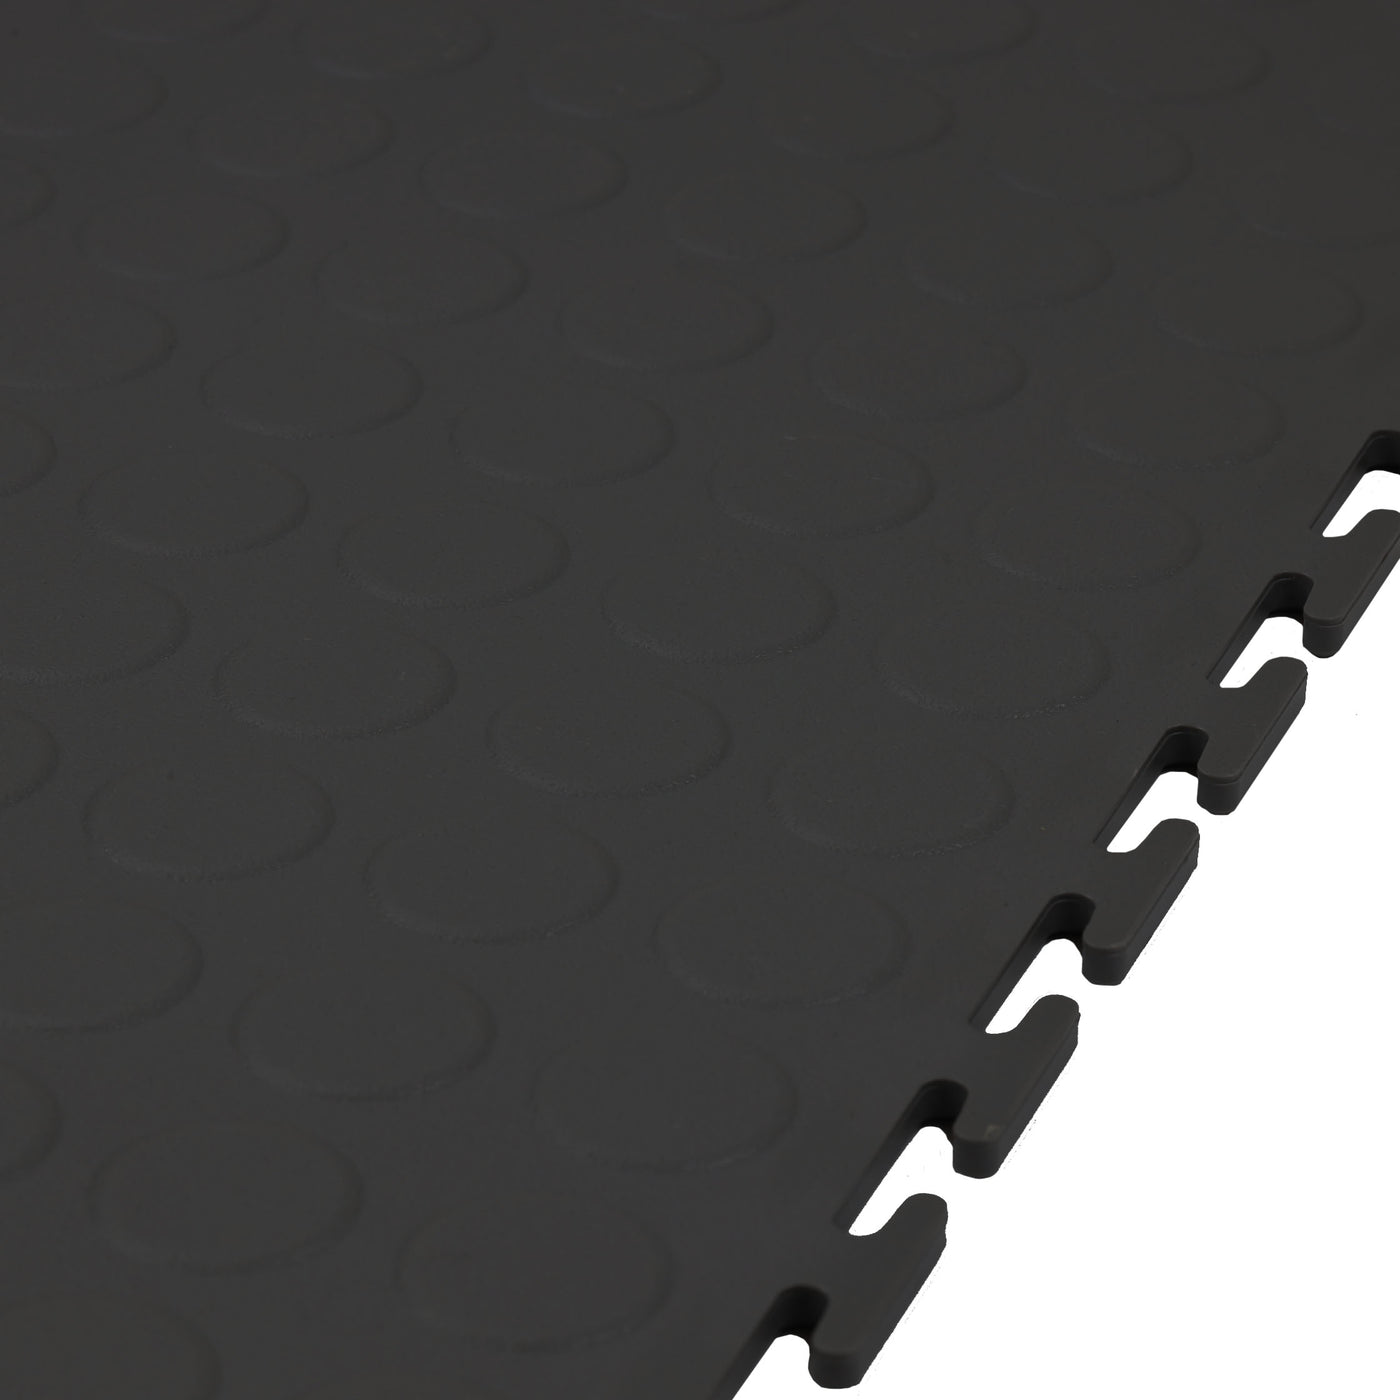 Graphite Garage Floor Tile Premium Raised Disc